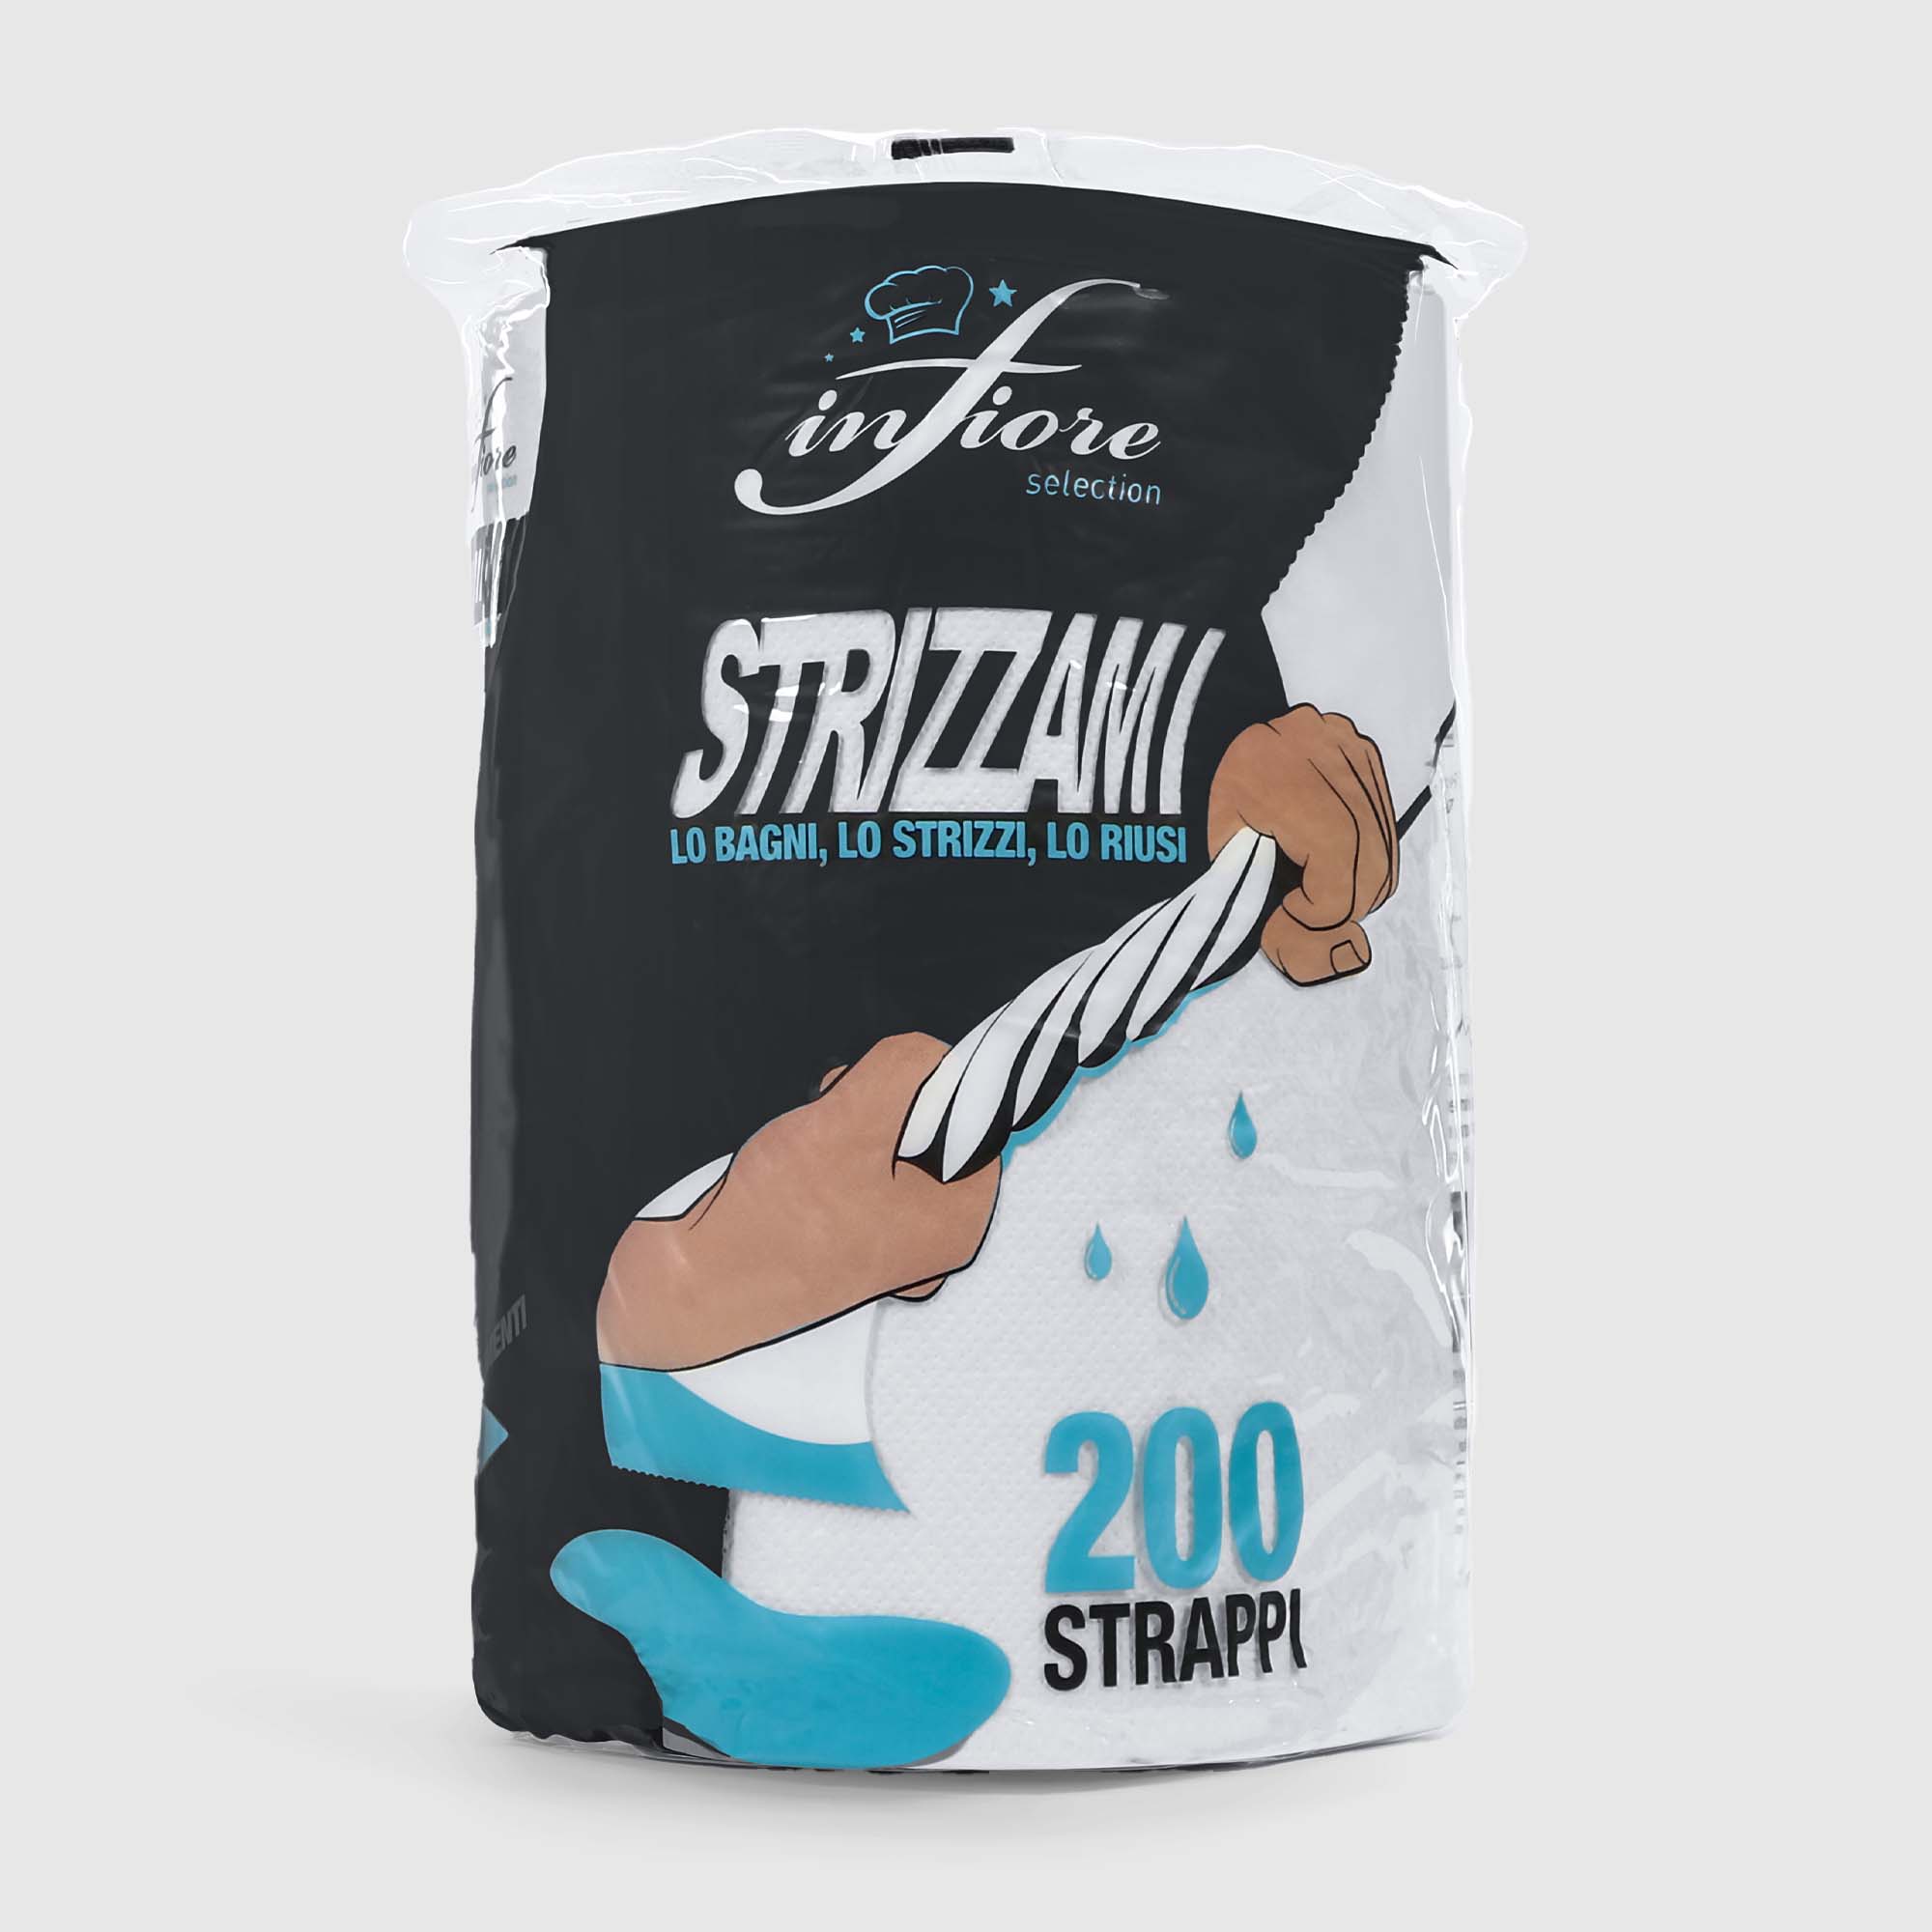 Полотенце кухонное Infiore strizzami зх слоя 200 листов, цвет белый